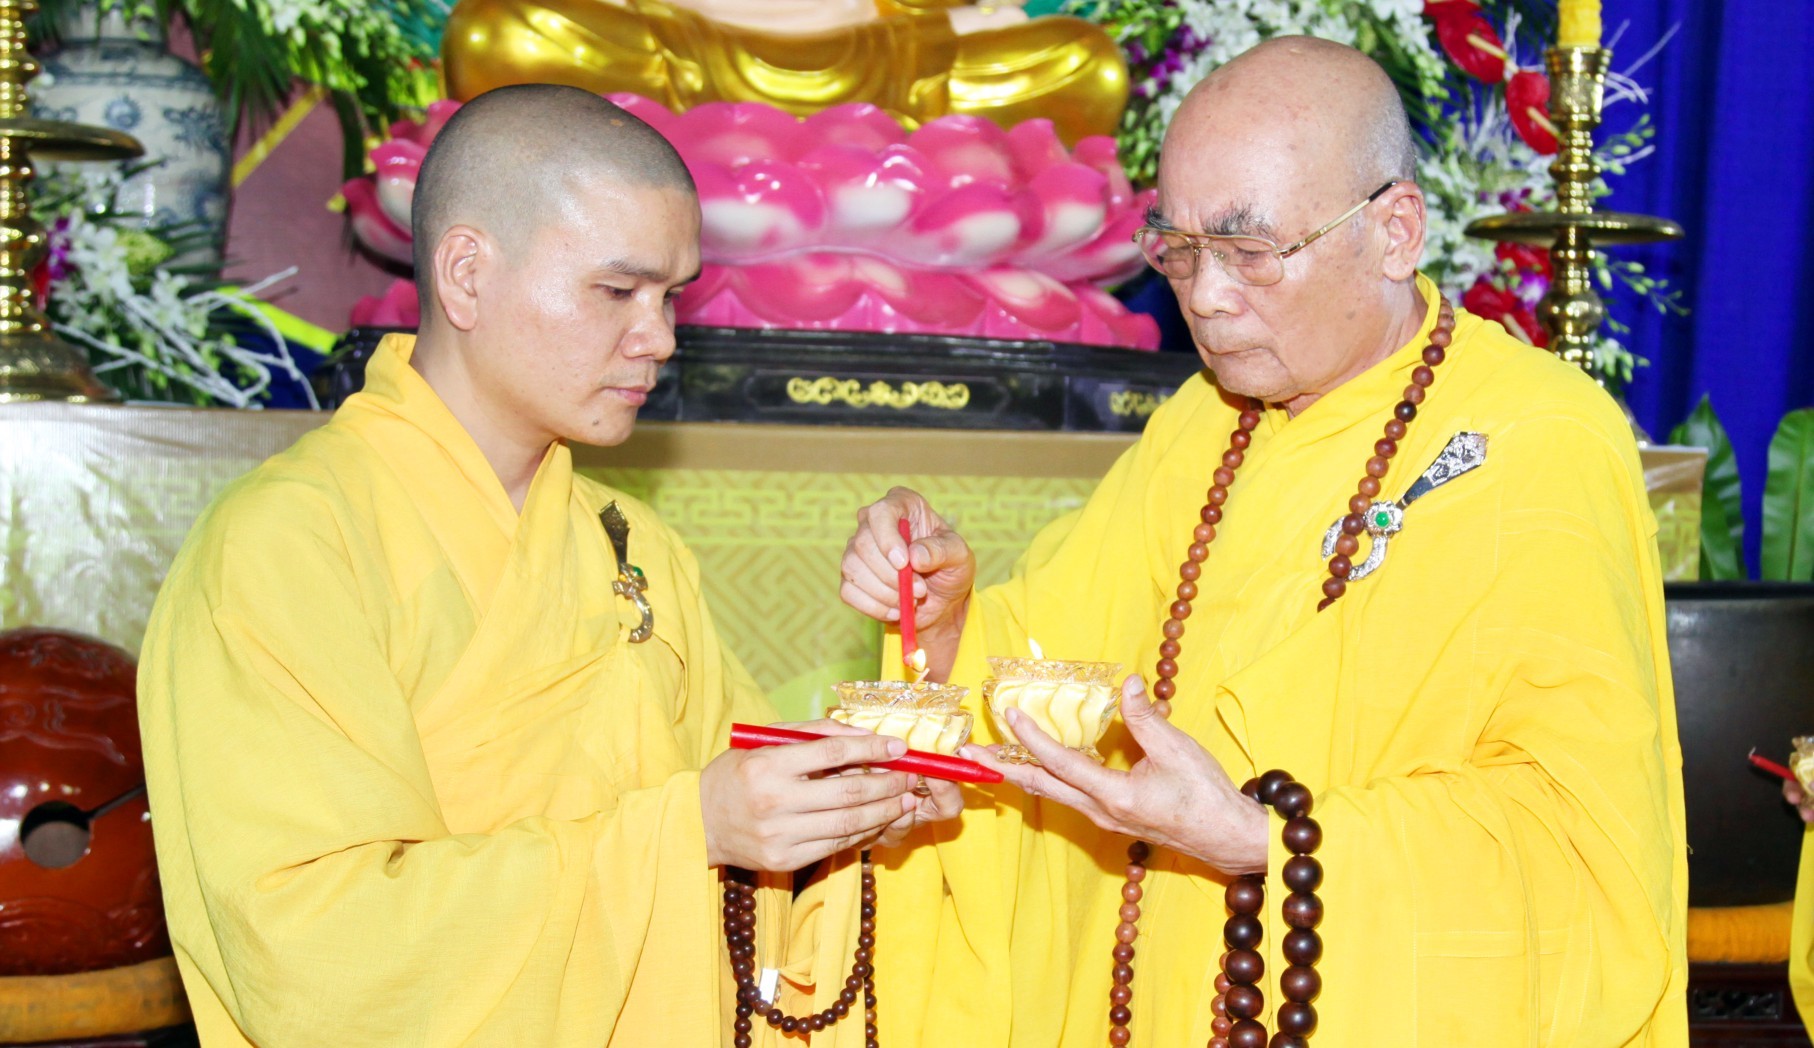 Đại đức Thích Quảng Duy trụ trì chùa Phước Viên (Tân Hiệp, Biên Hòa, Đồng Nai) tiếp nến từ cố HT.Thích Quang Đạo tại buổi lễ Vía Đức Phật thành đạo năm 2017.